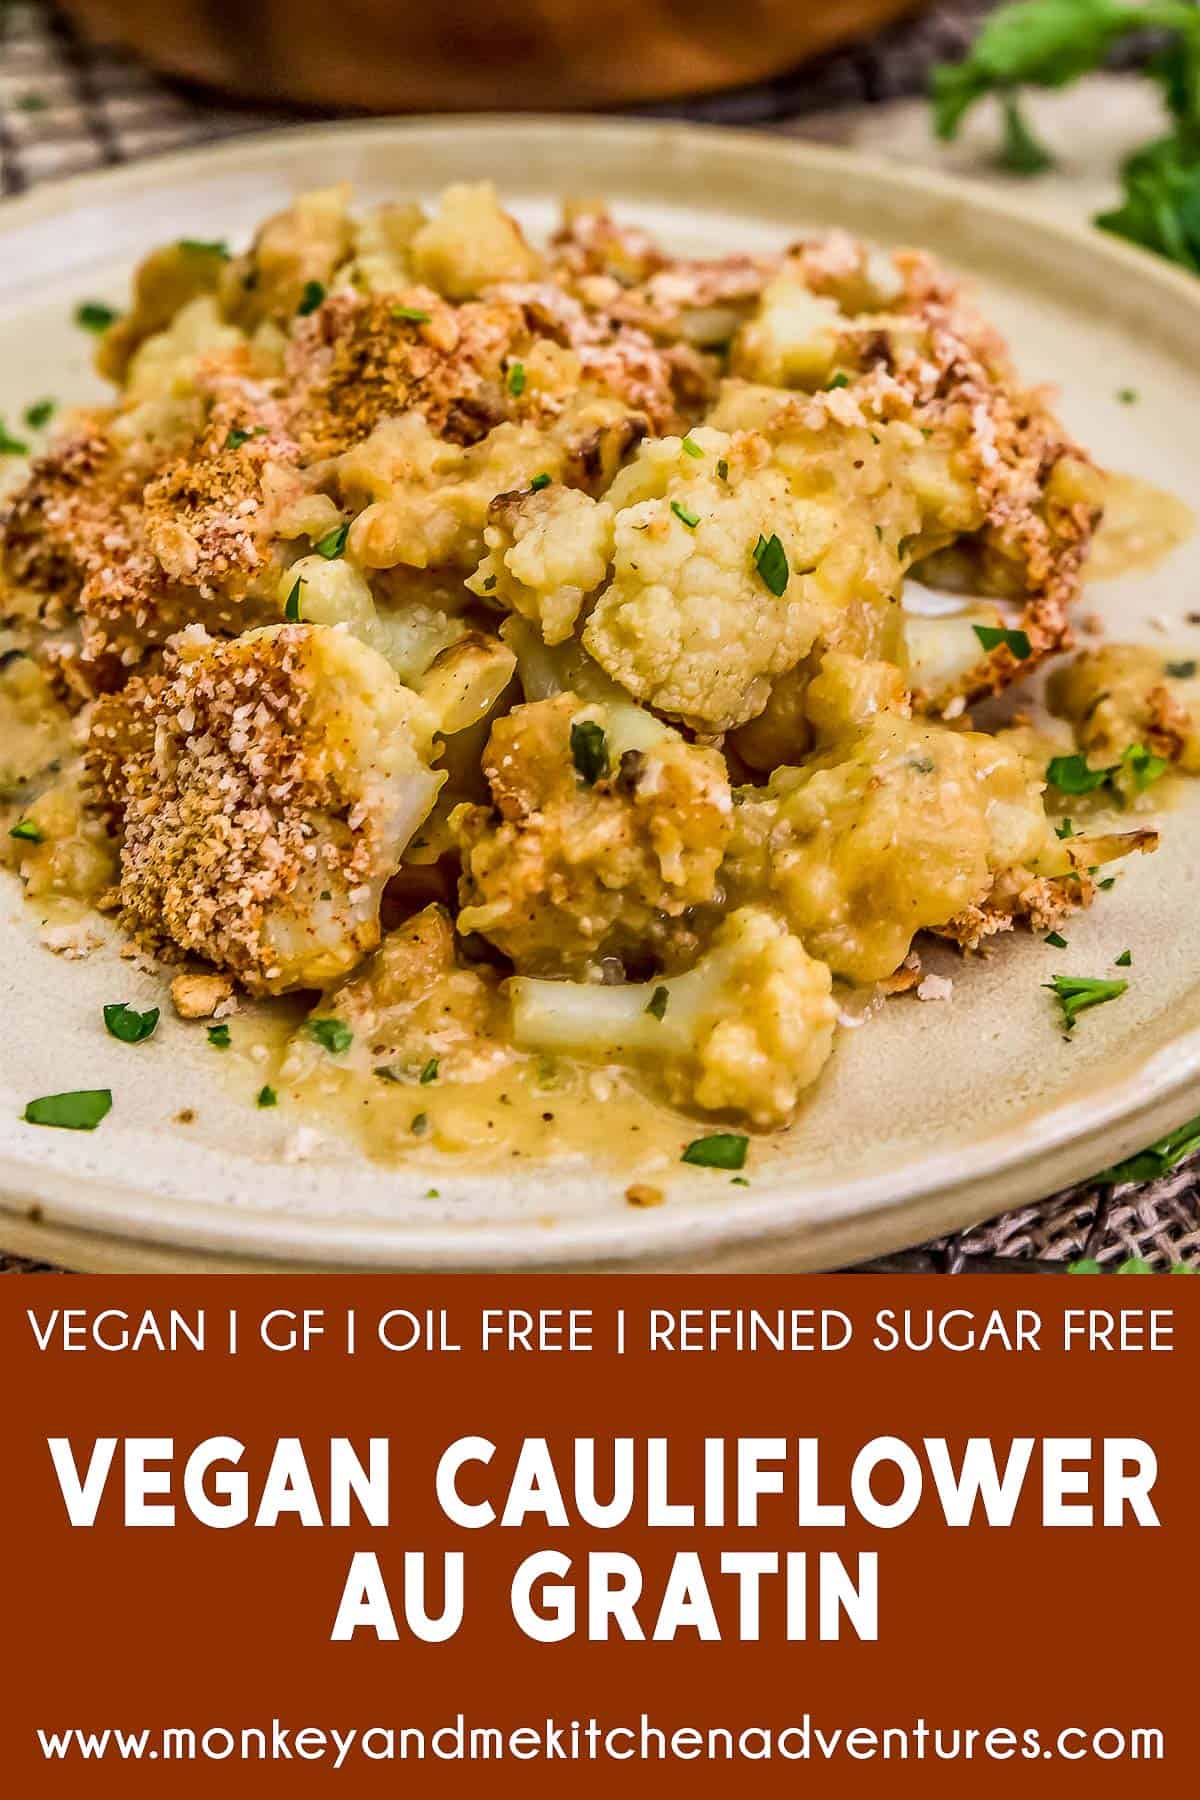 Vegan Cauliflower Au Gratin with text description